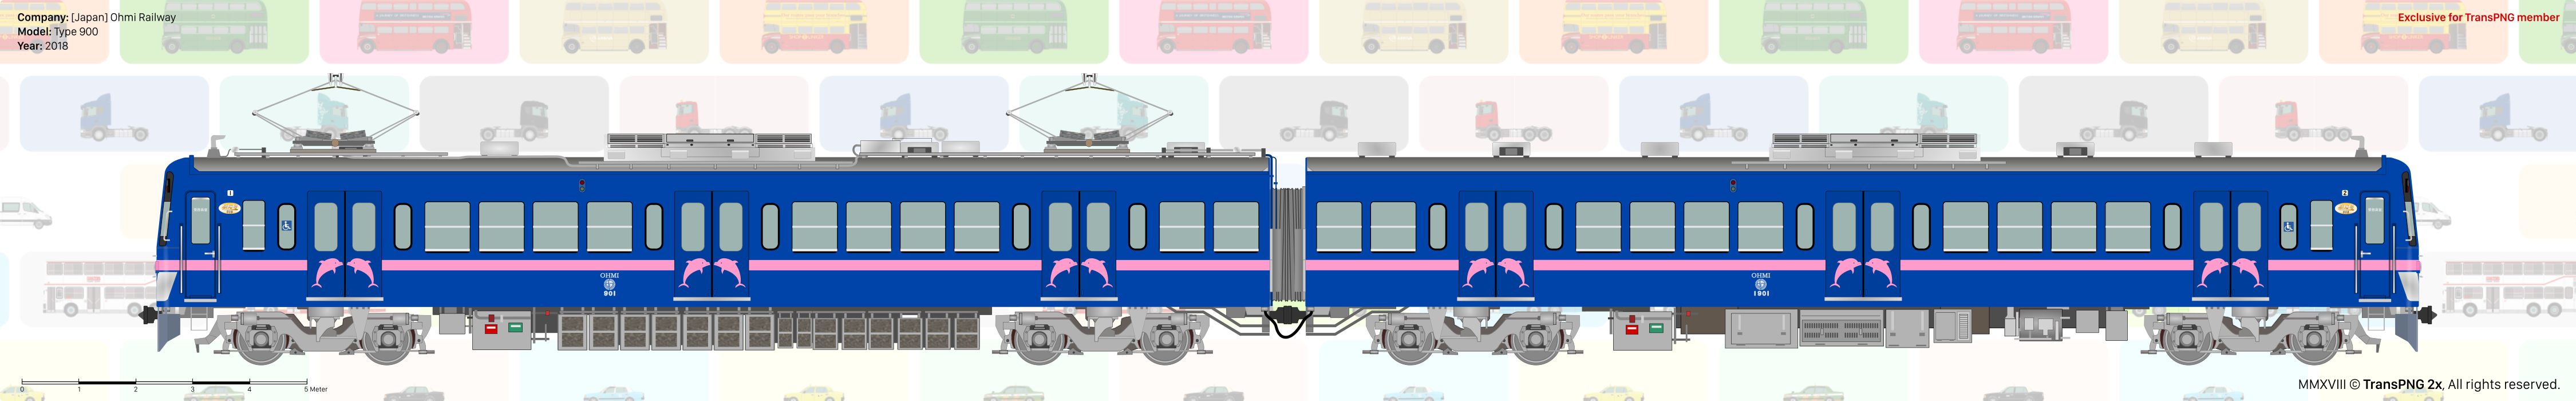 Ohmi_Railway - [25022X] Ohmi Railway 30984719338_62d9b45e93_o